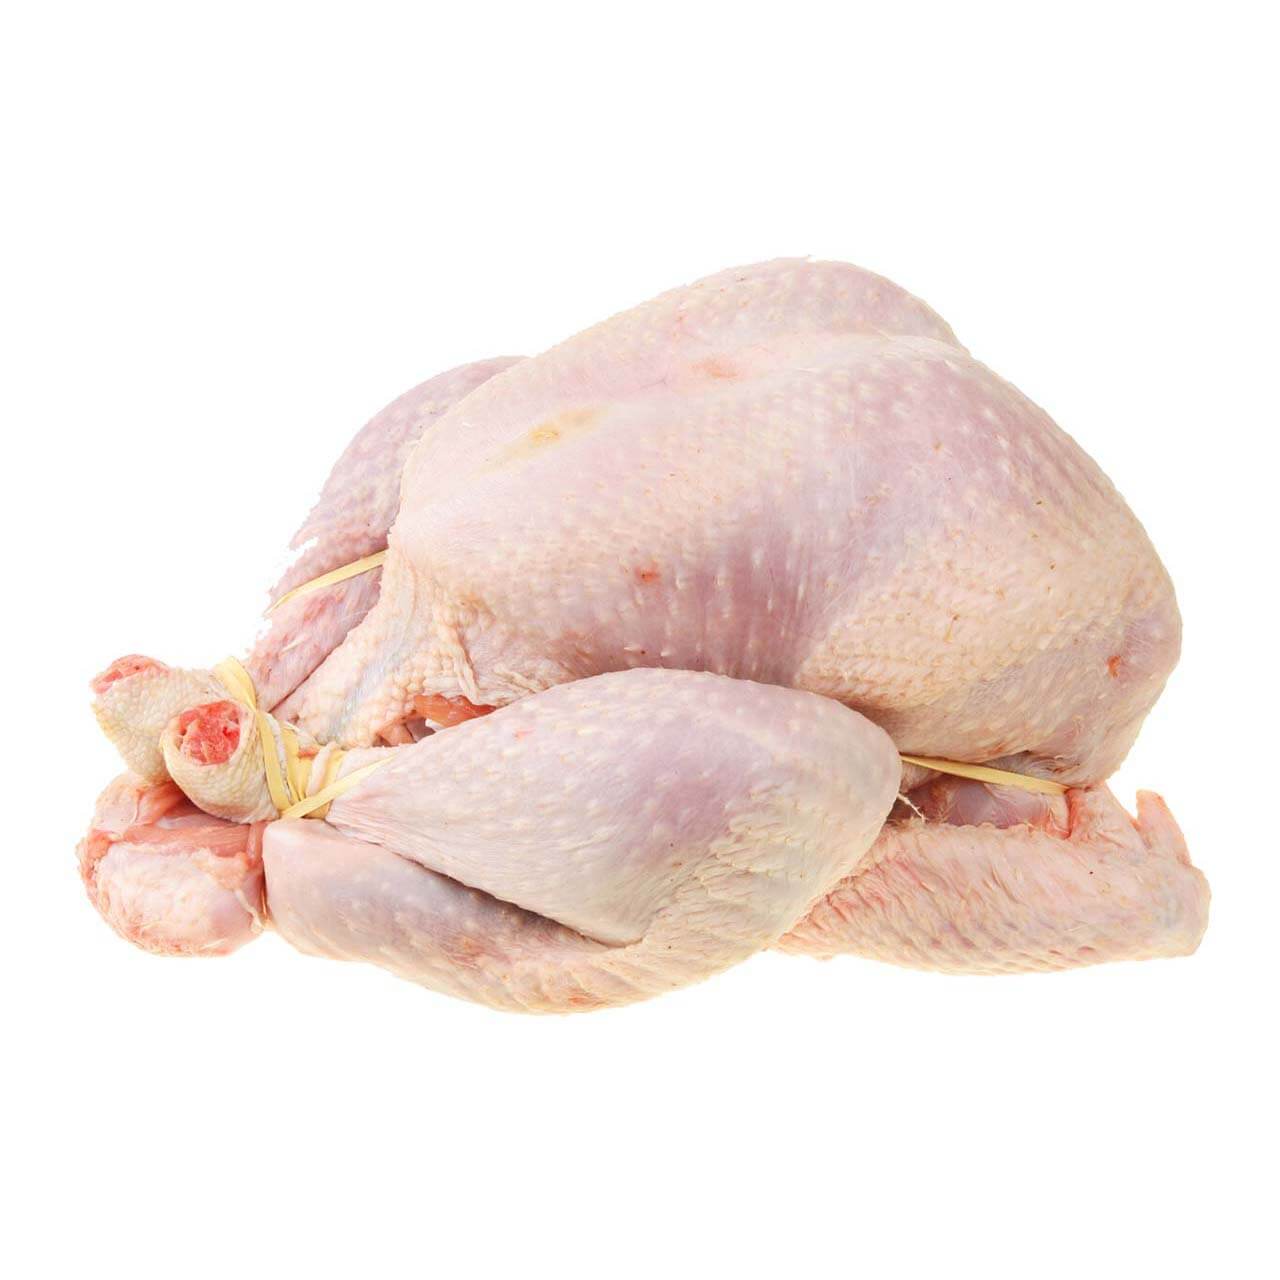 Turkey Whole Bird